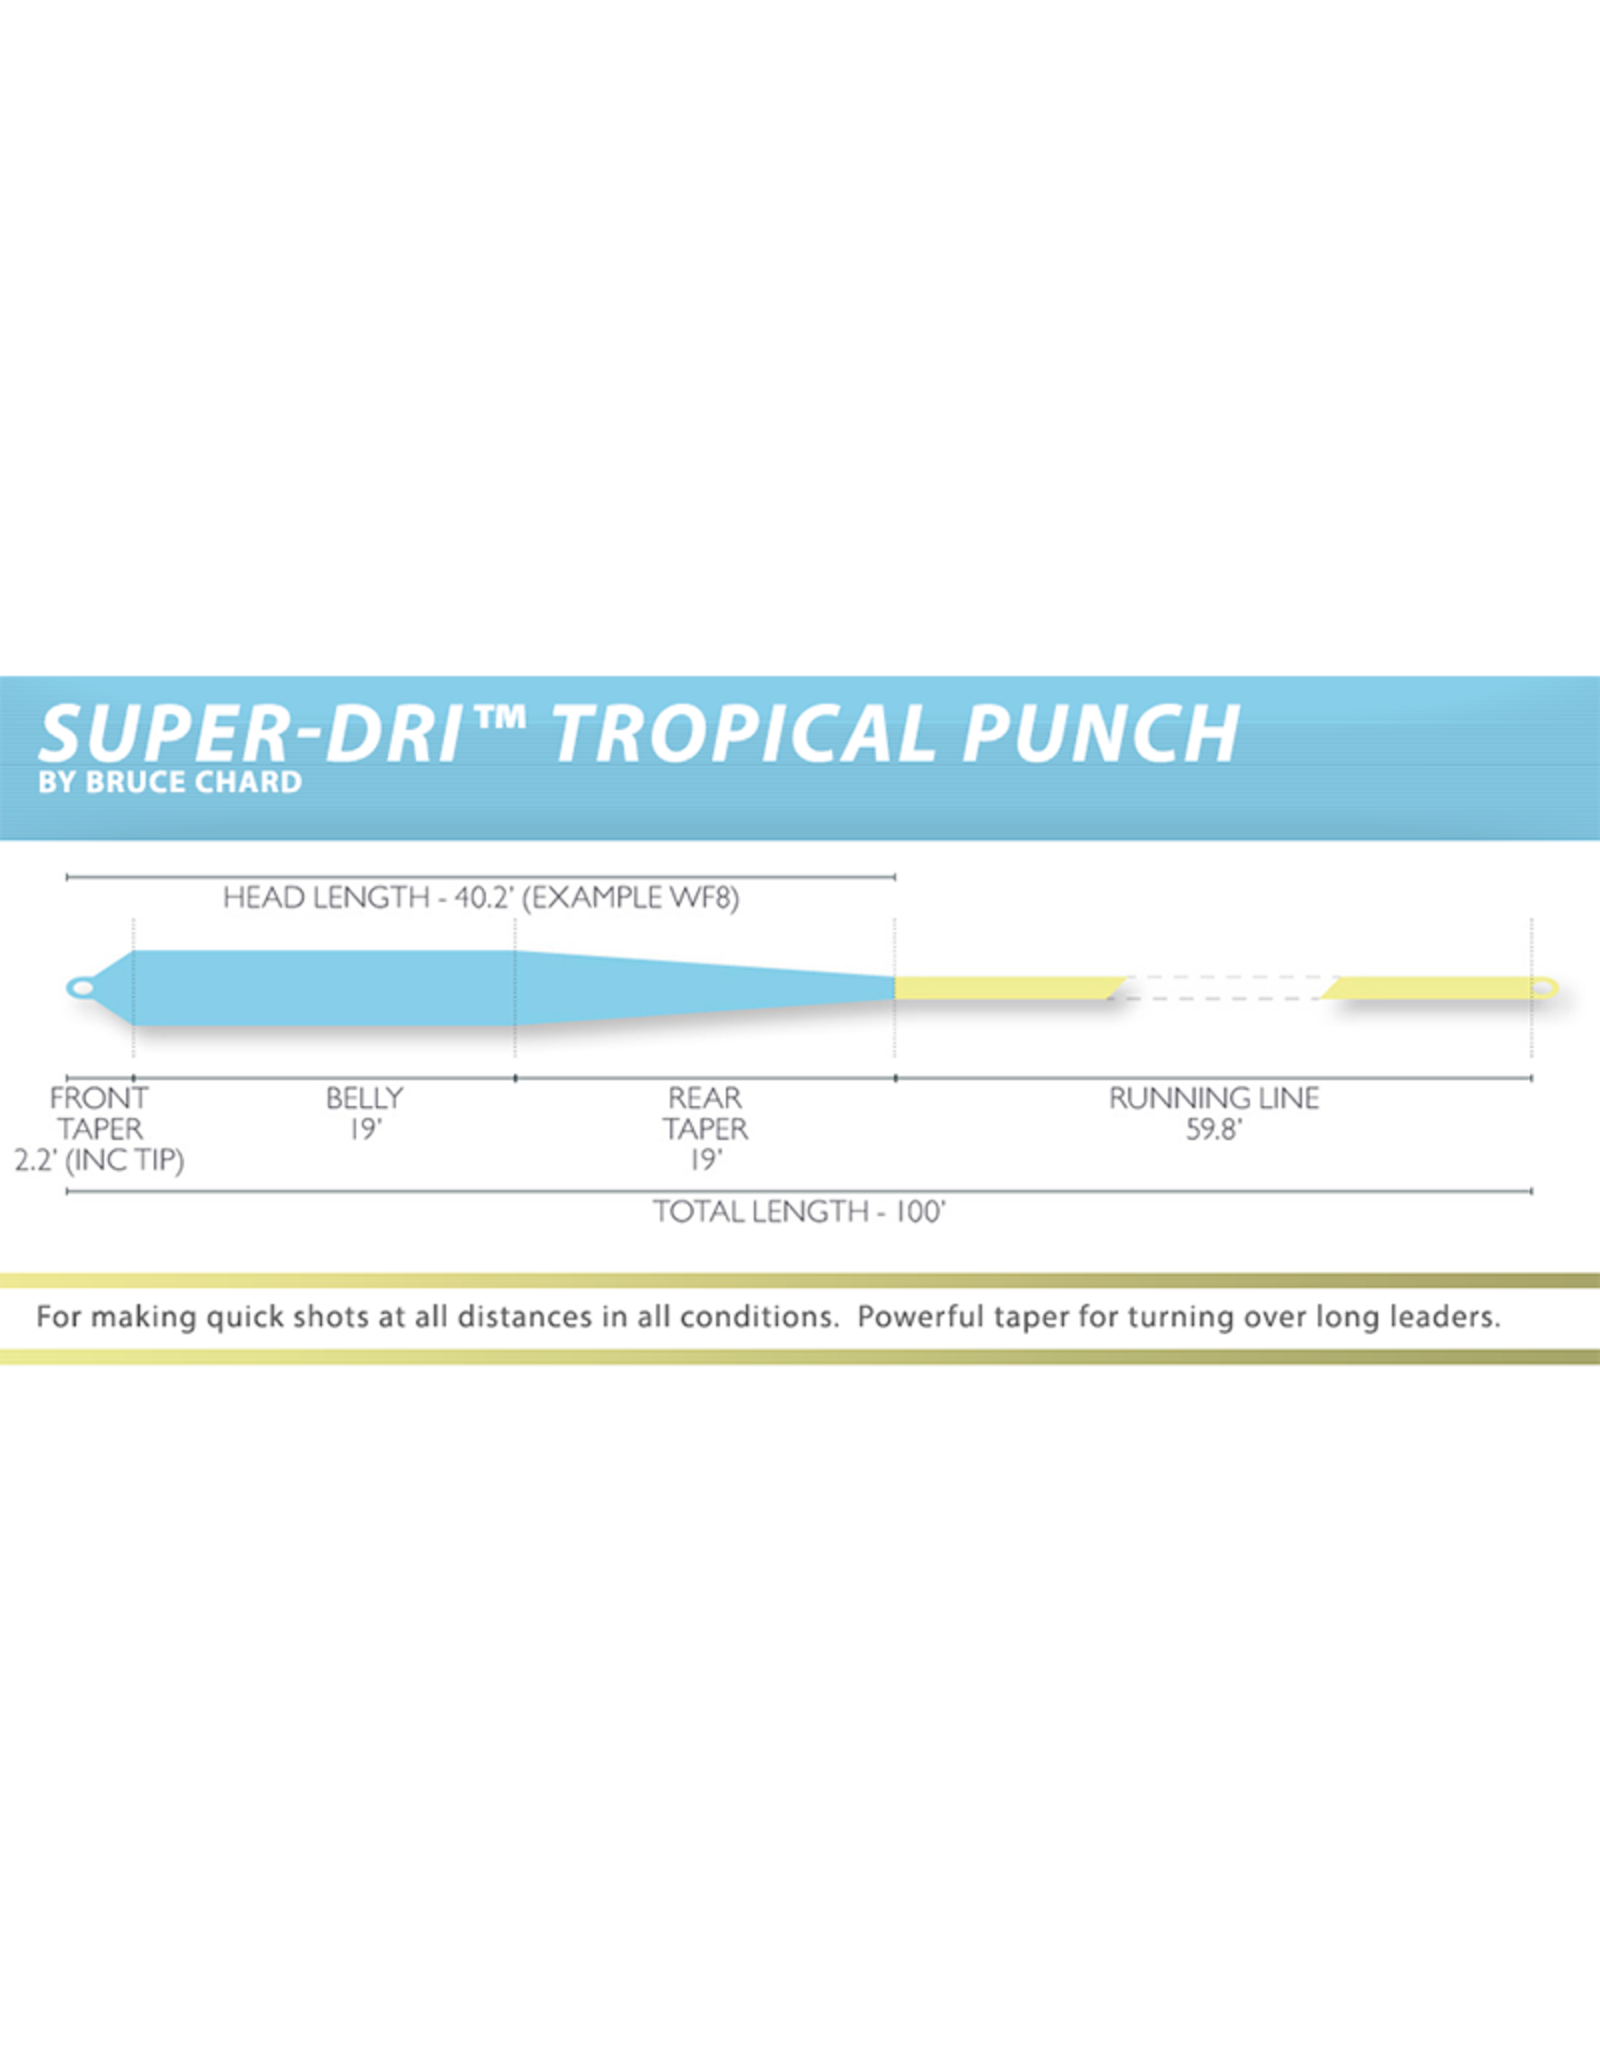 Airflo Super-DRI™ Tropical Punch